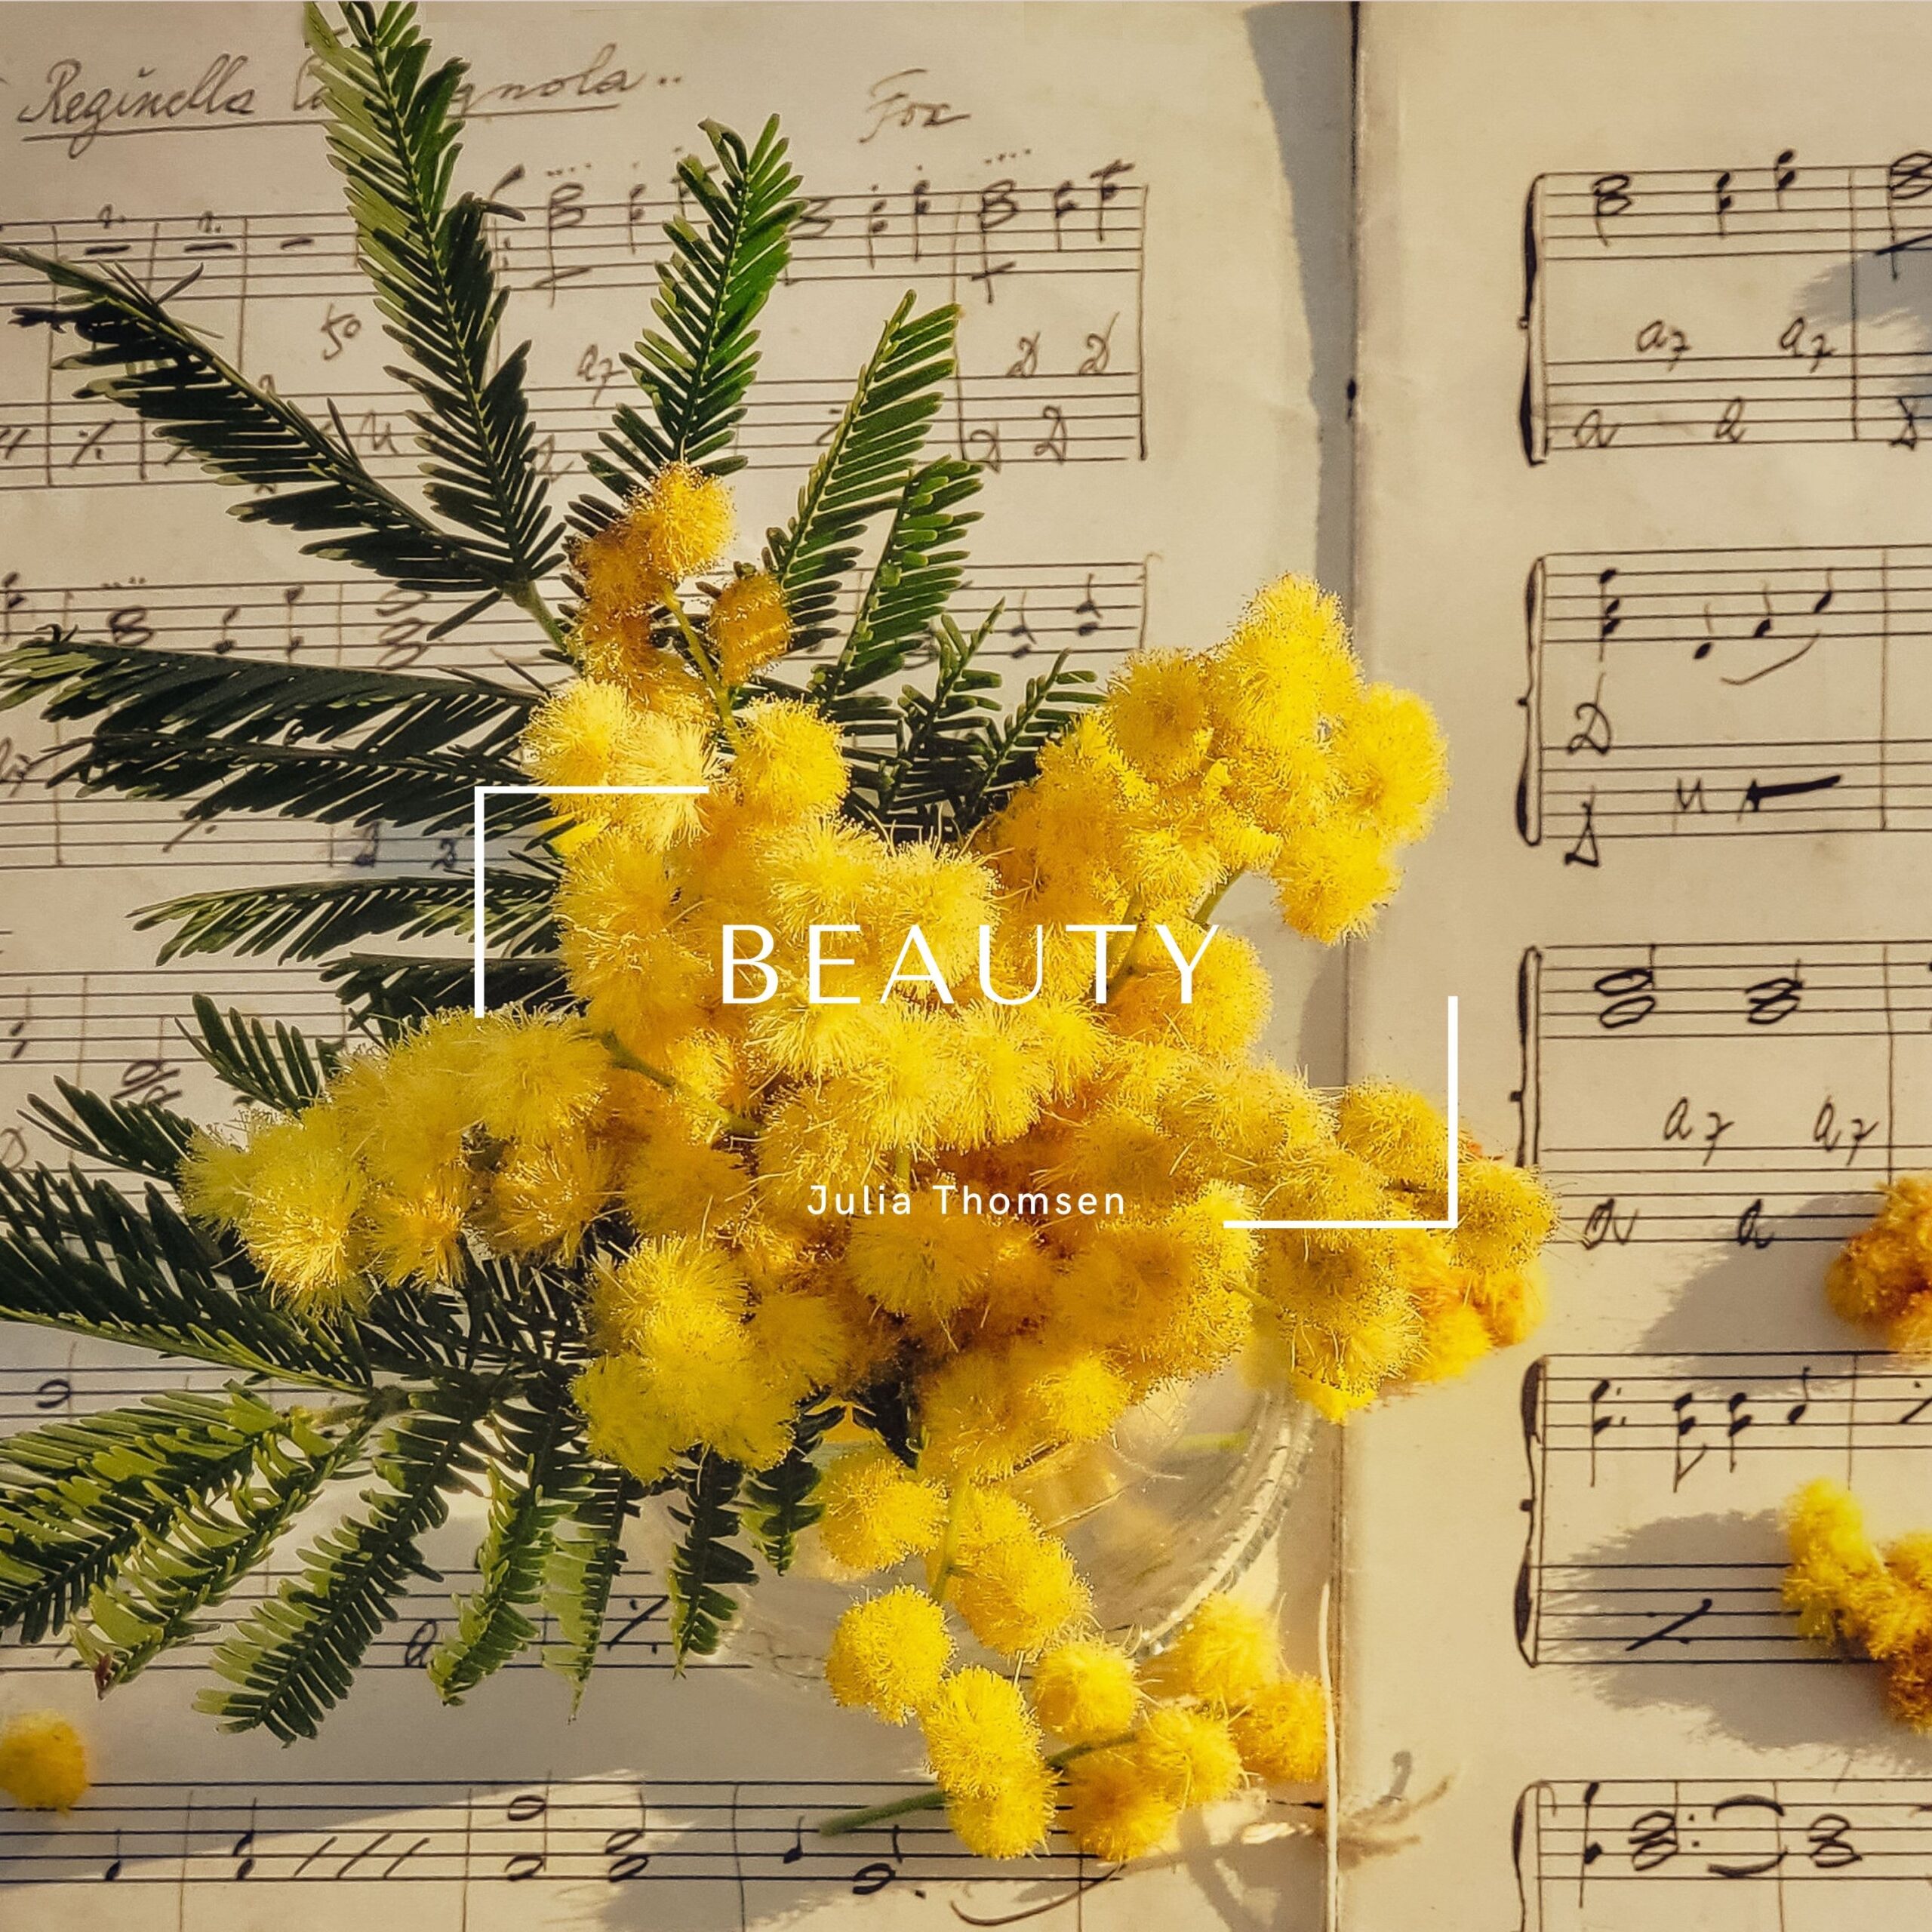 Julia Thomsen Releases "Beauty" From "Harmonies of WoMen" Album